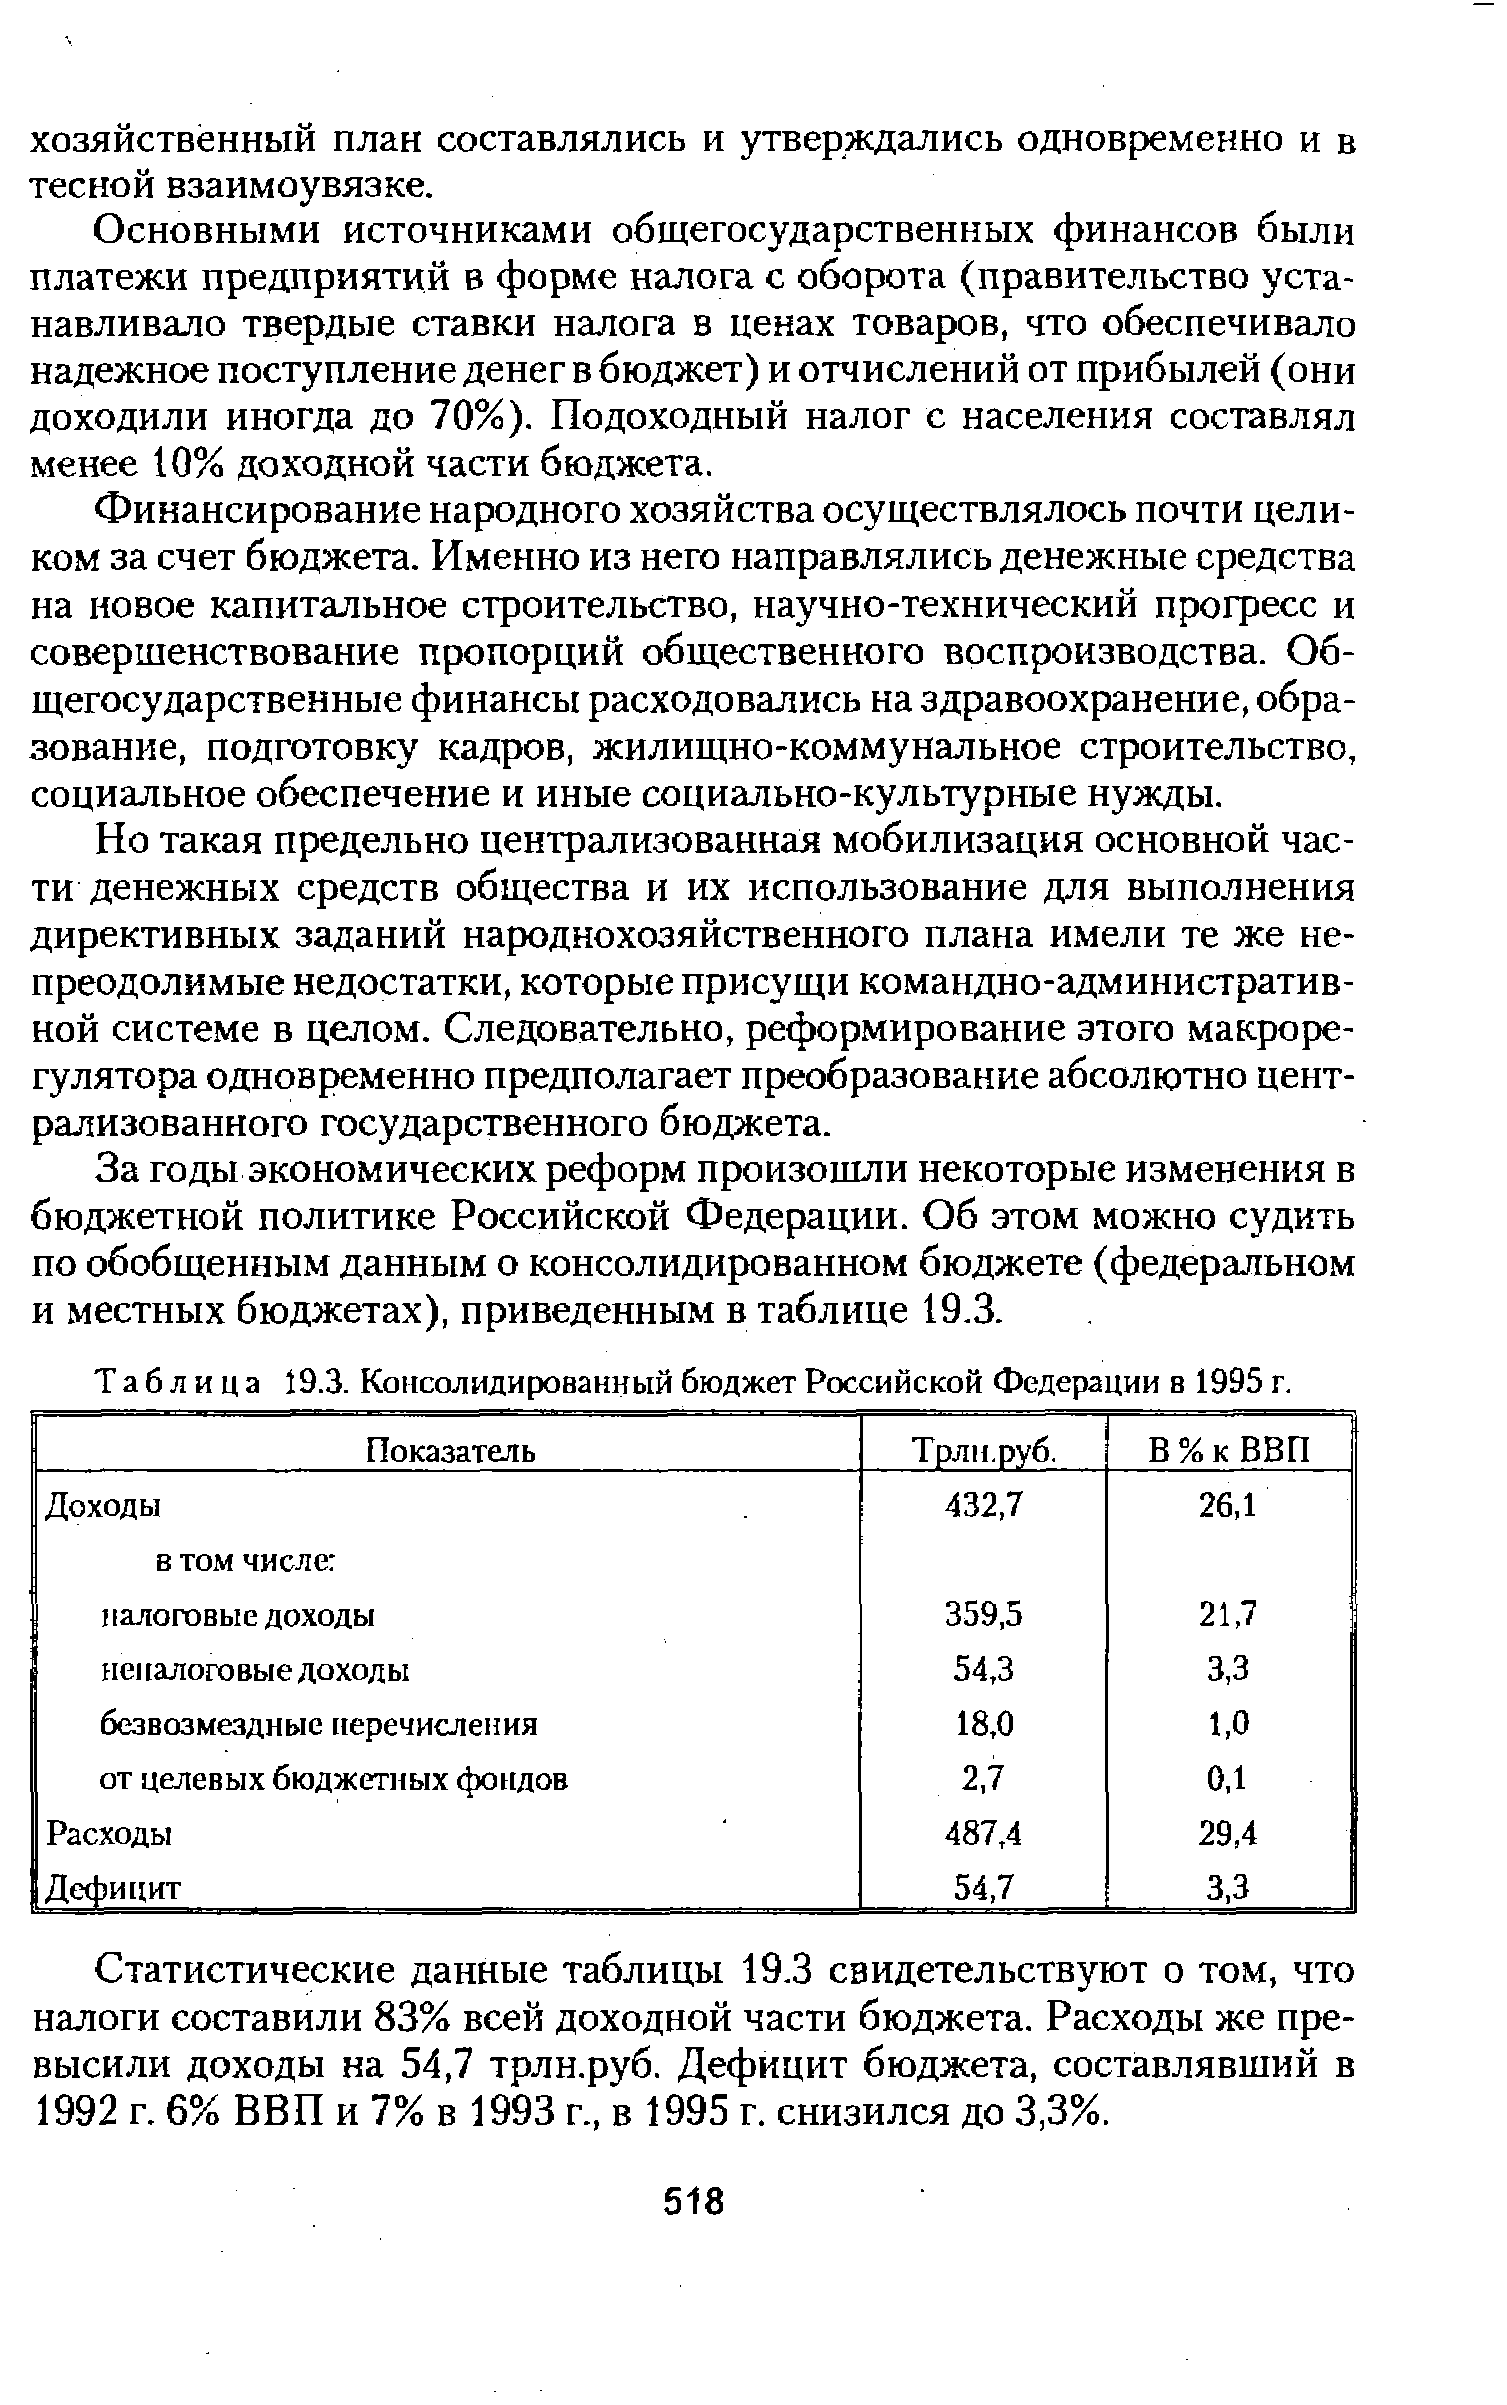 Таблица 19.3. <a href="/info/19936">Консолидированный бюджет</a> Российской Федерации в 1995 г.
